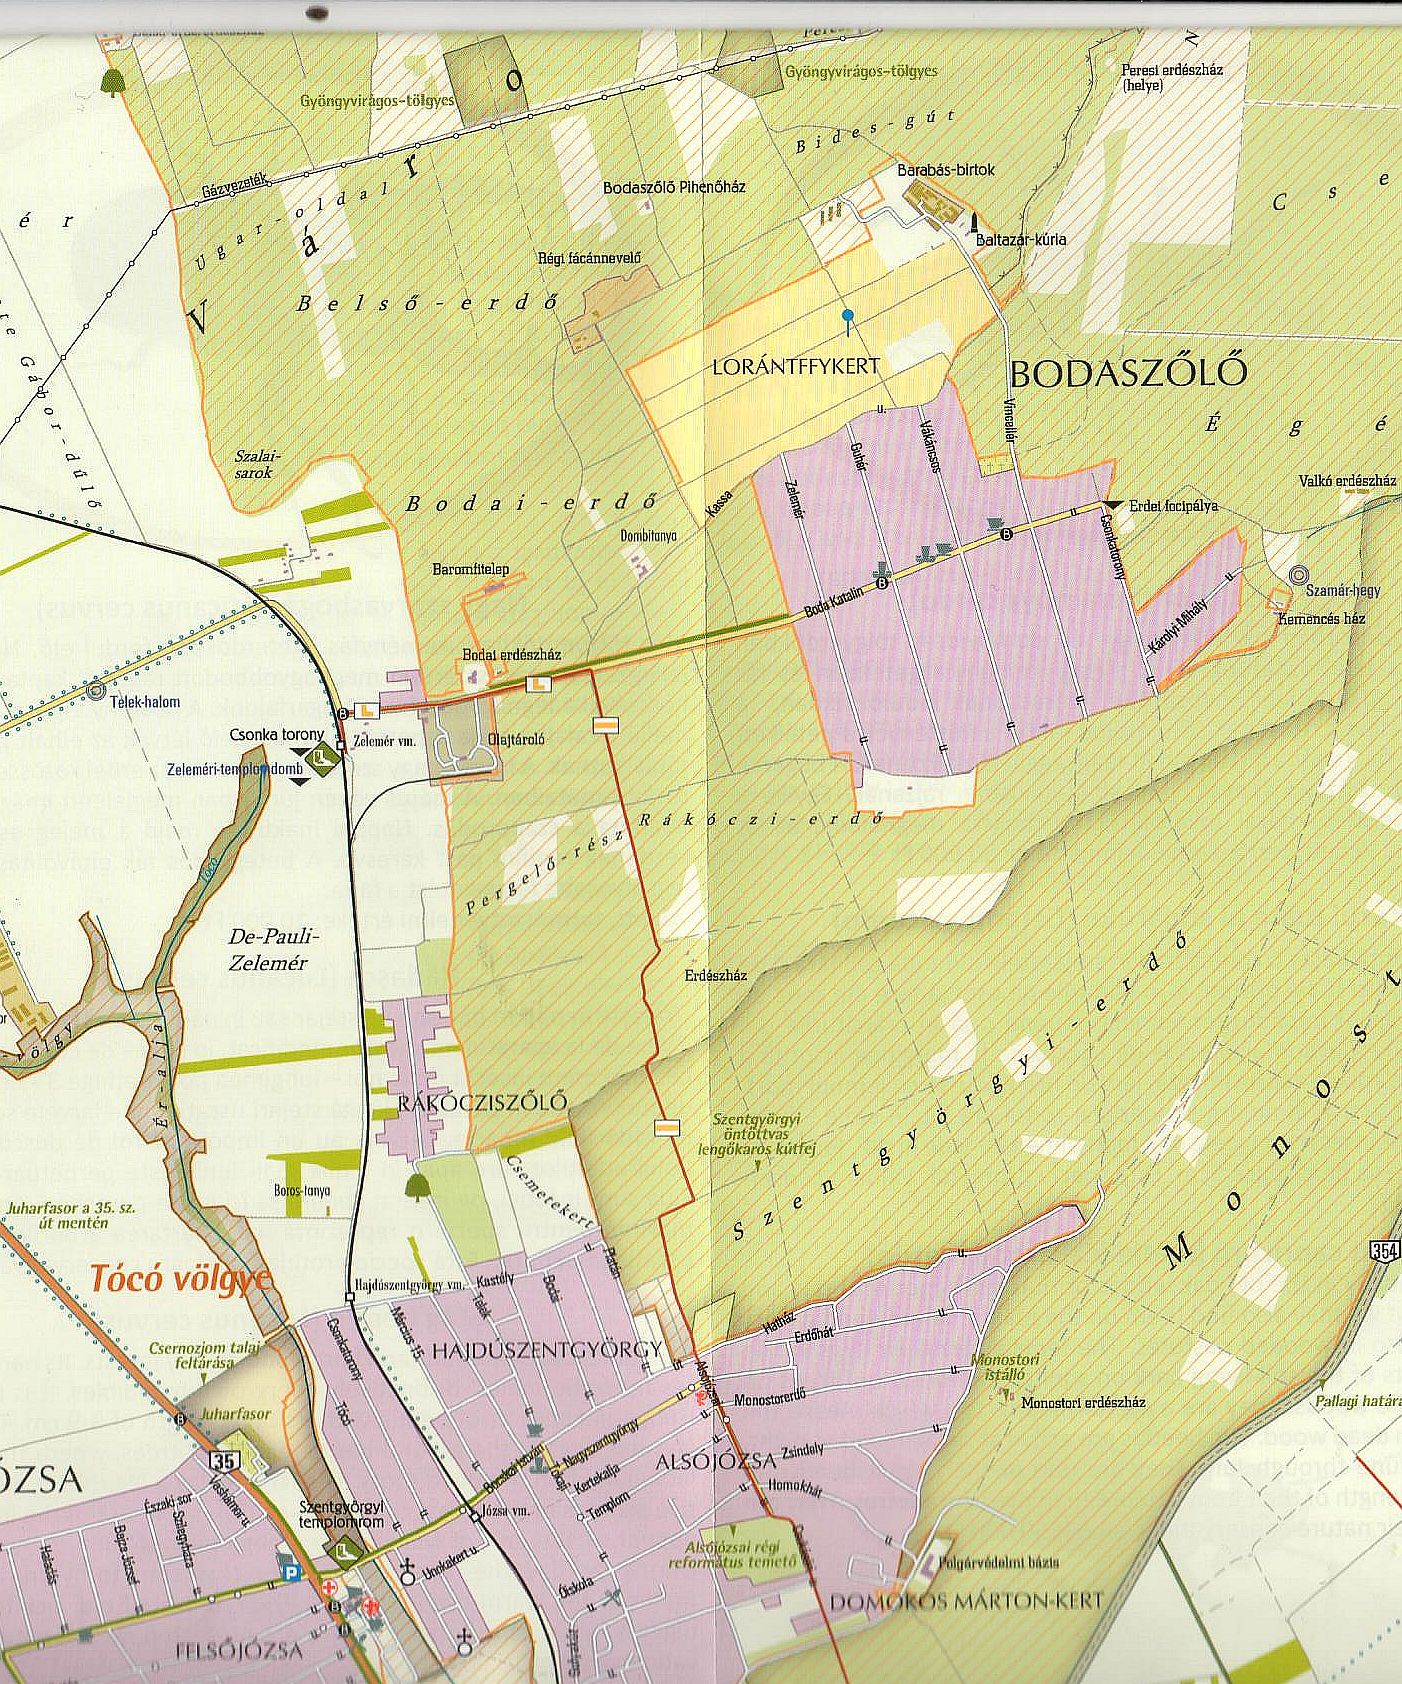 Debrecen-Nagyerdő: sample map